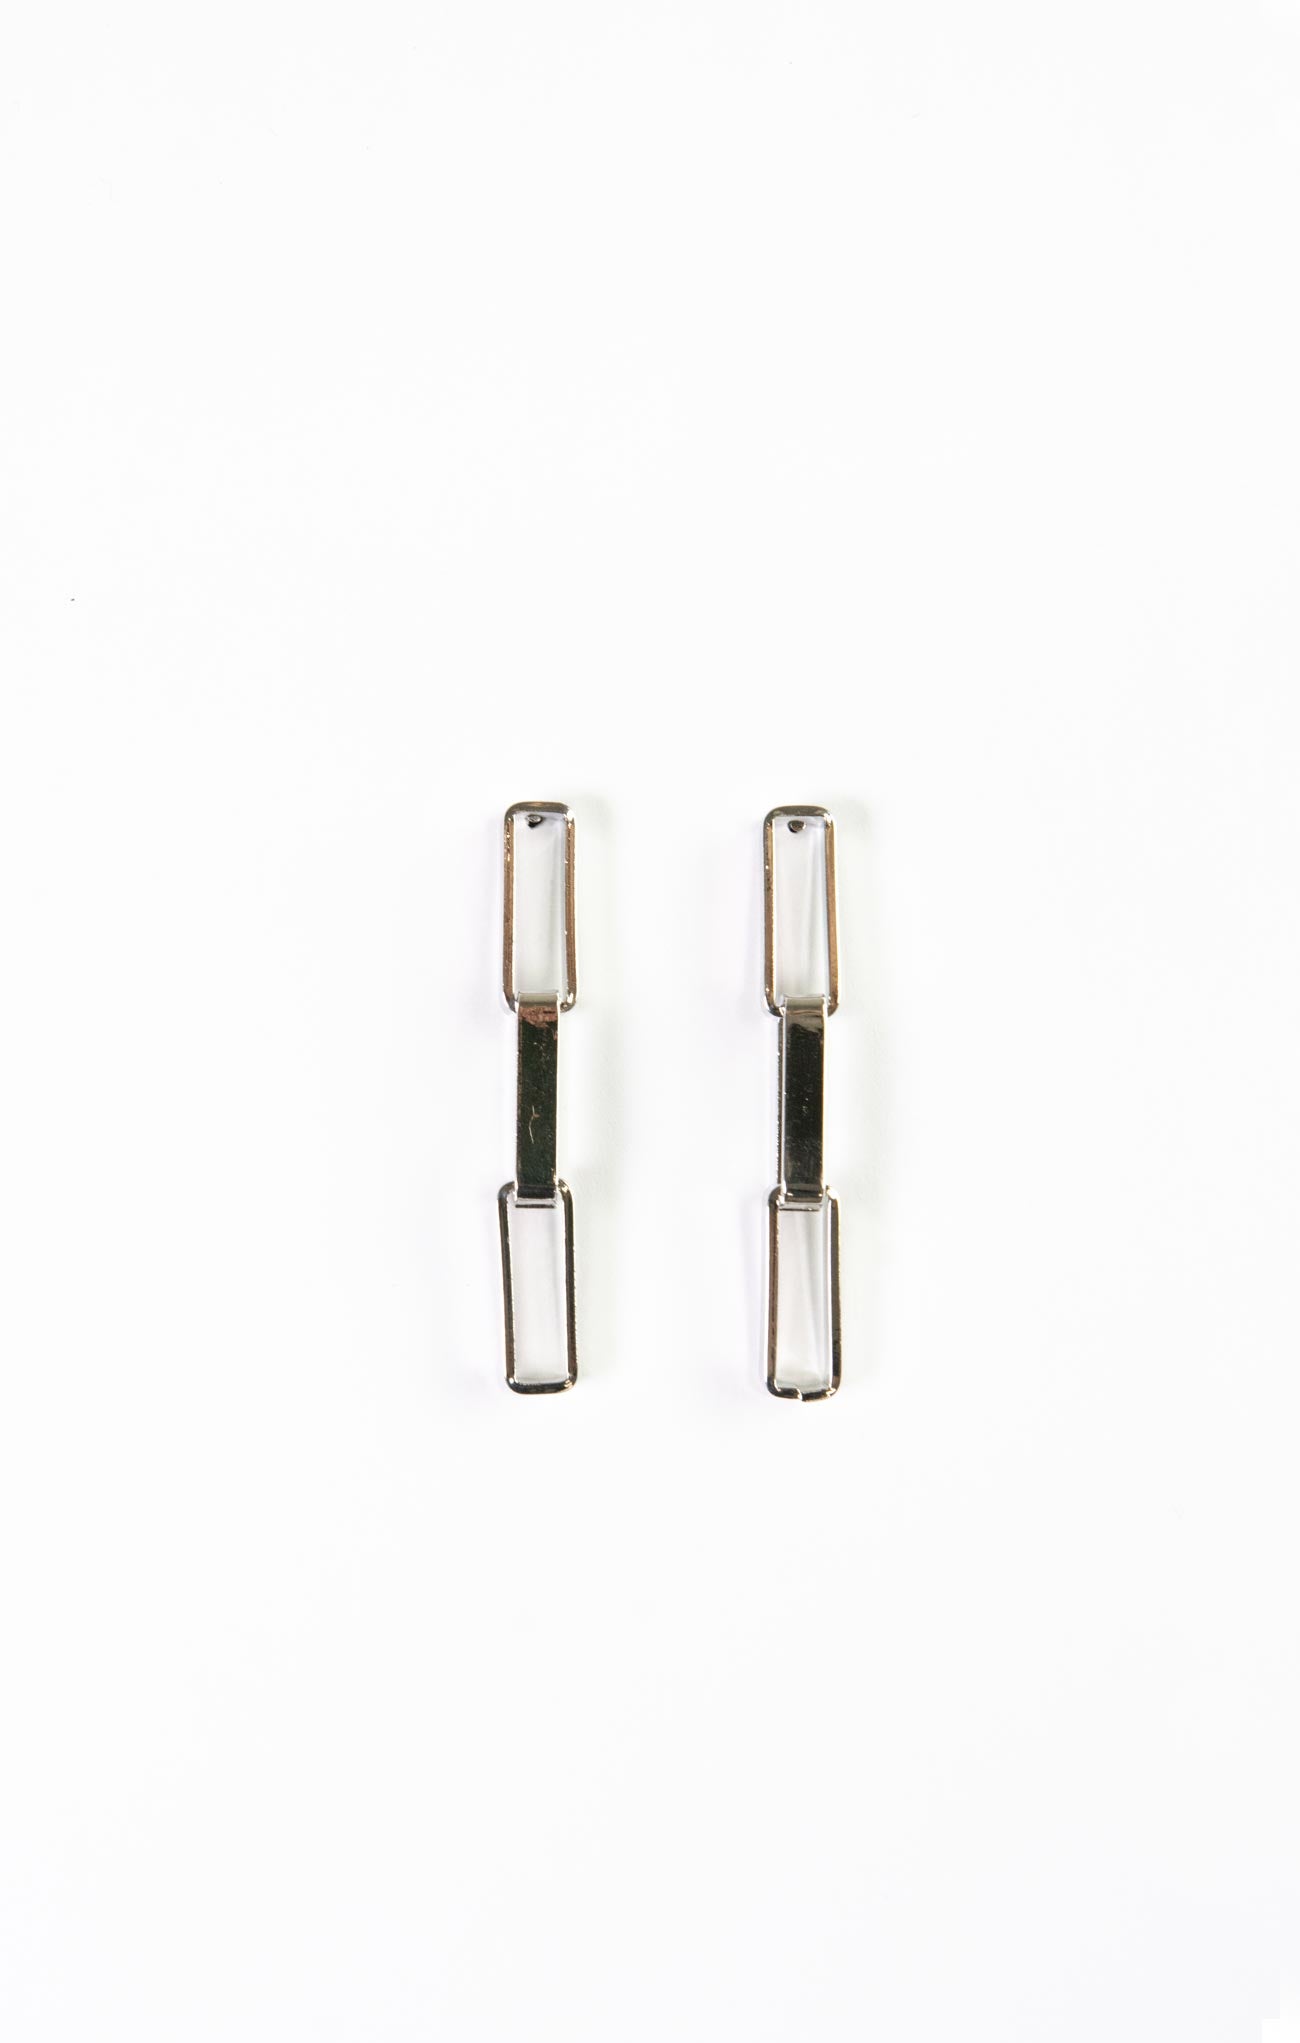 GEOMETRIC CLIP EARRINGS-gold,silver,clip earrings,dangle earrings